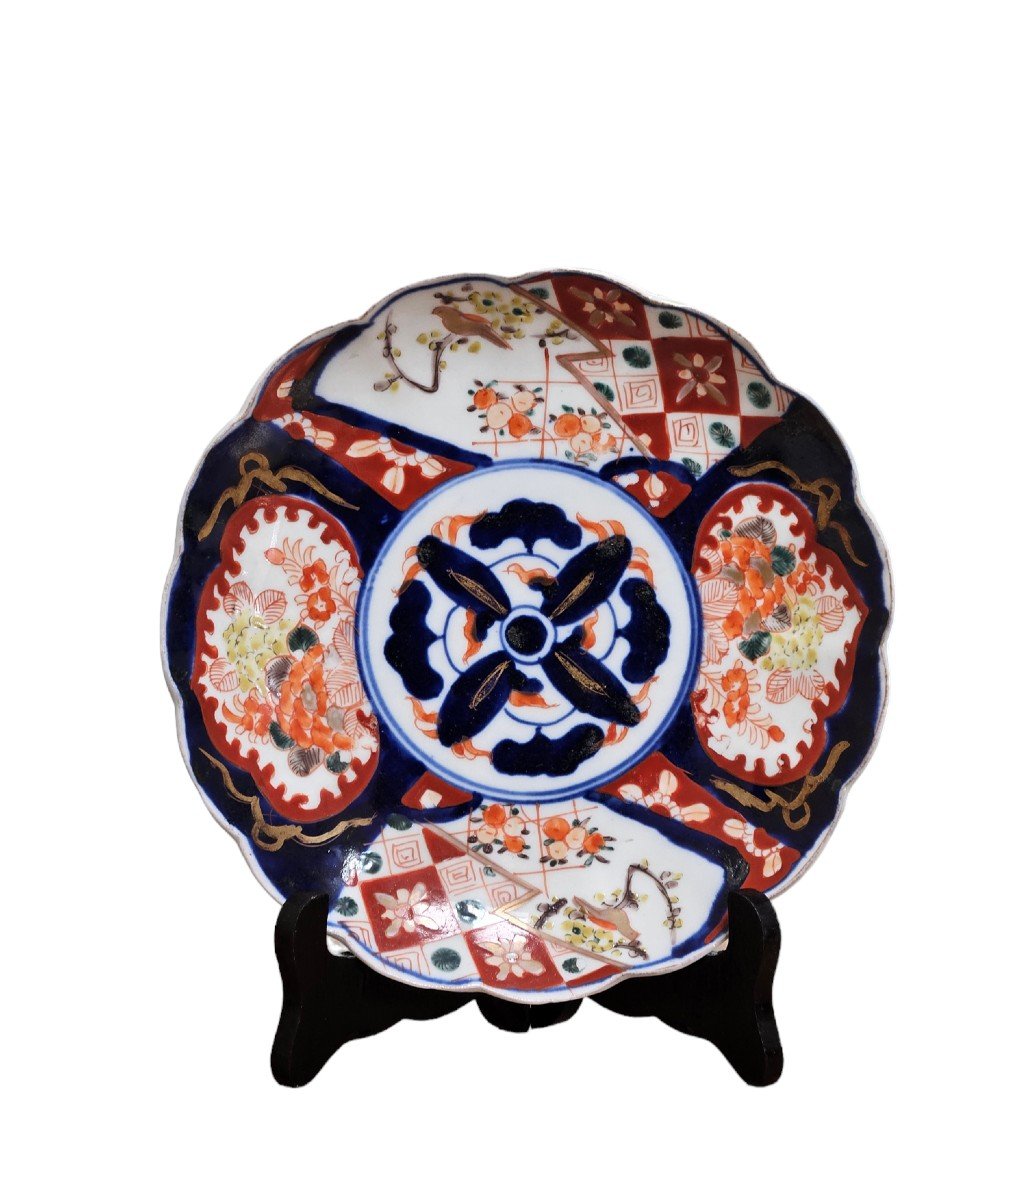 Porcelain Plate, Imari Japan - Asian Art